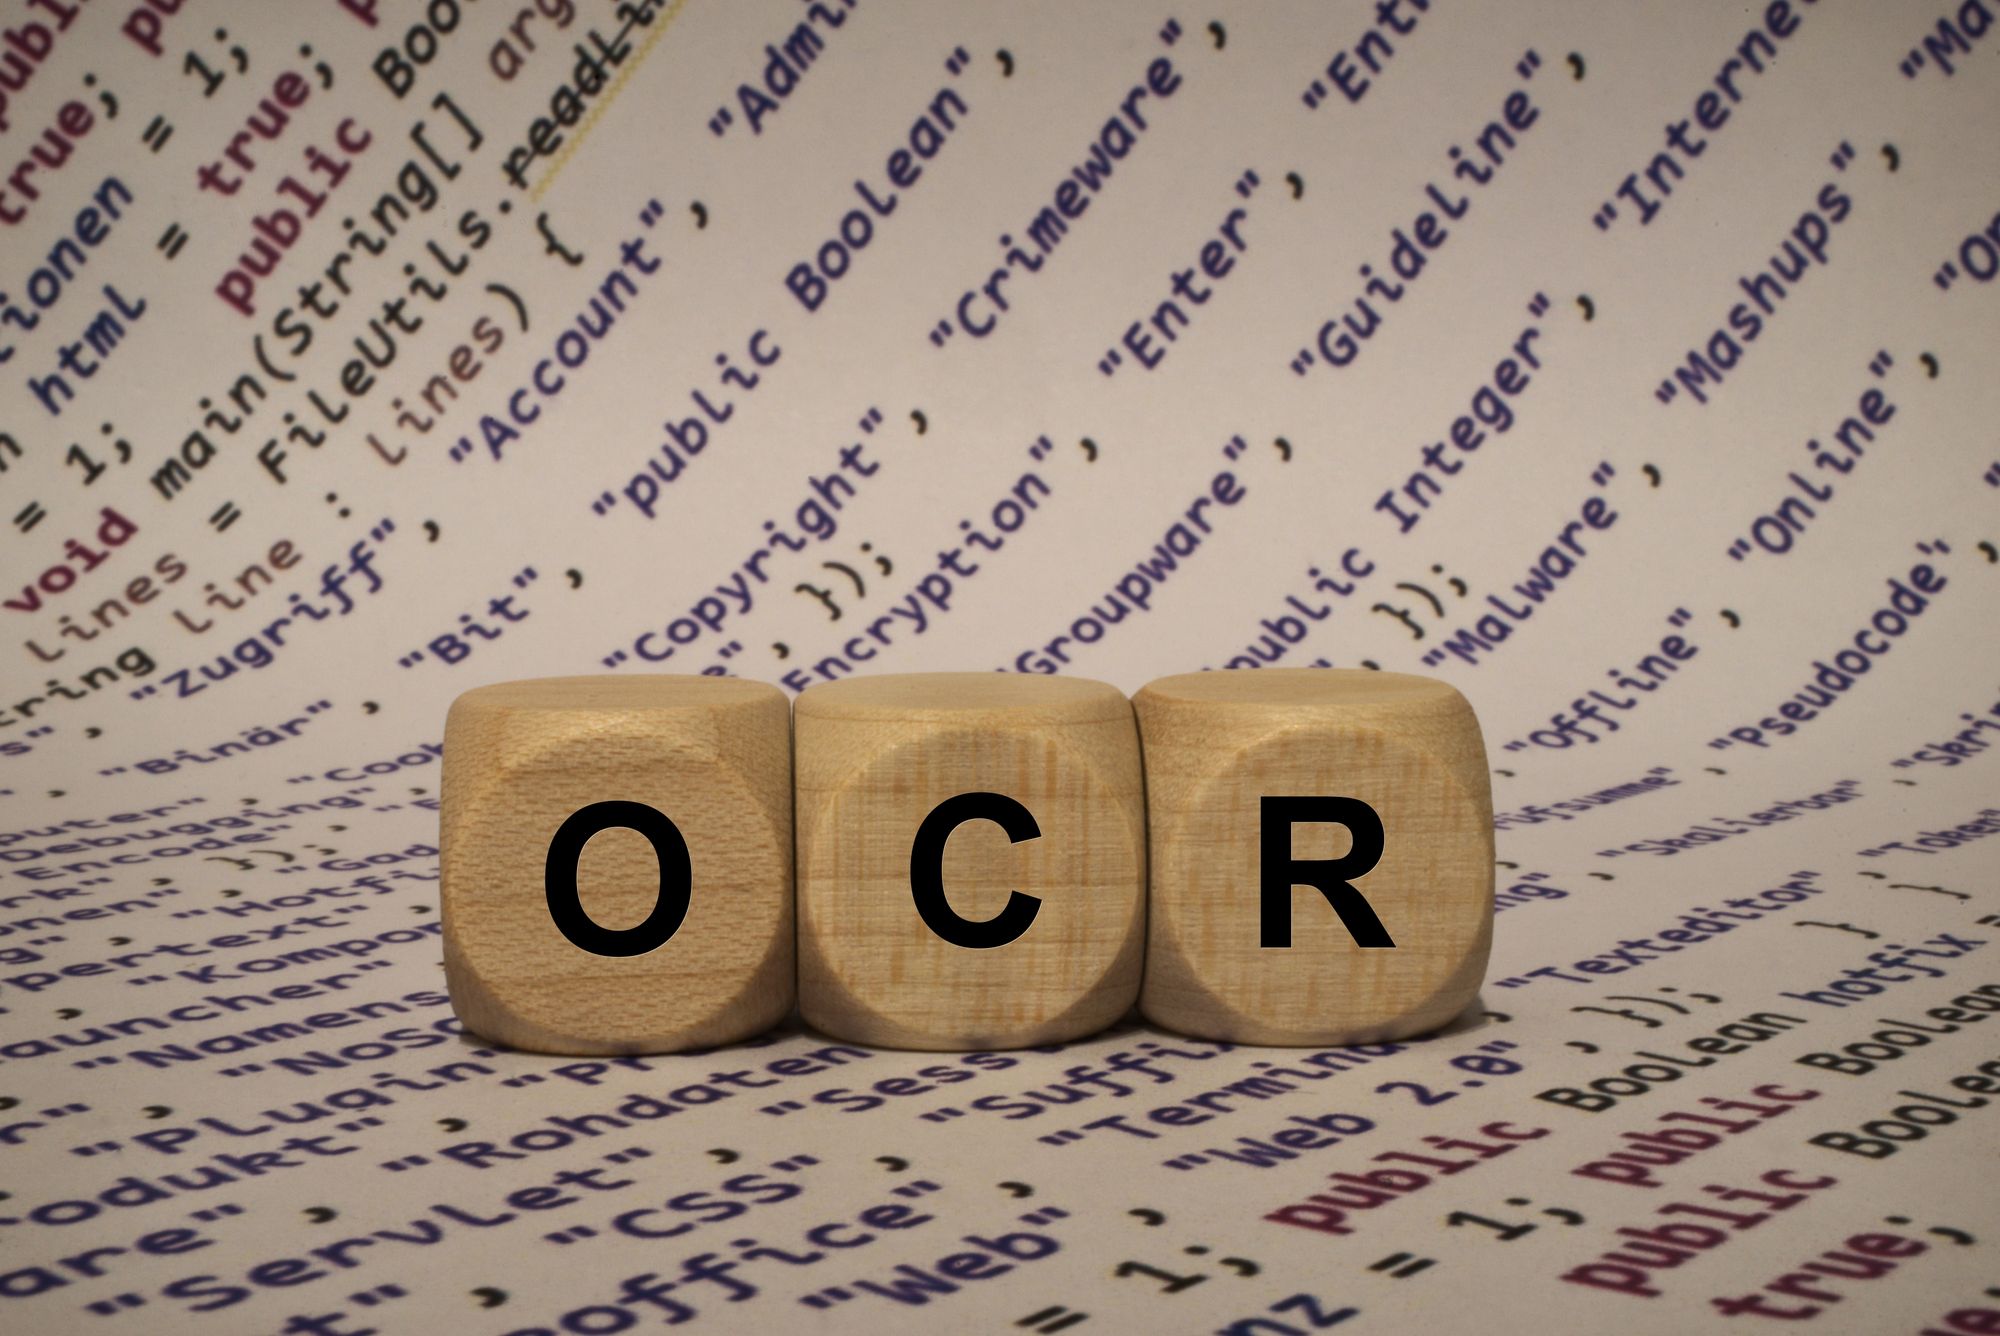 ocr recognition software torrent mac